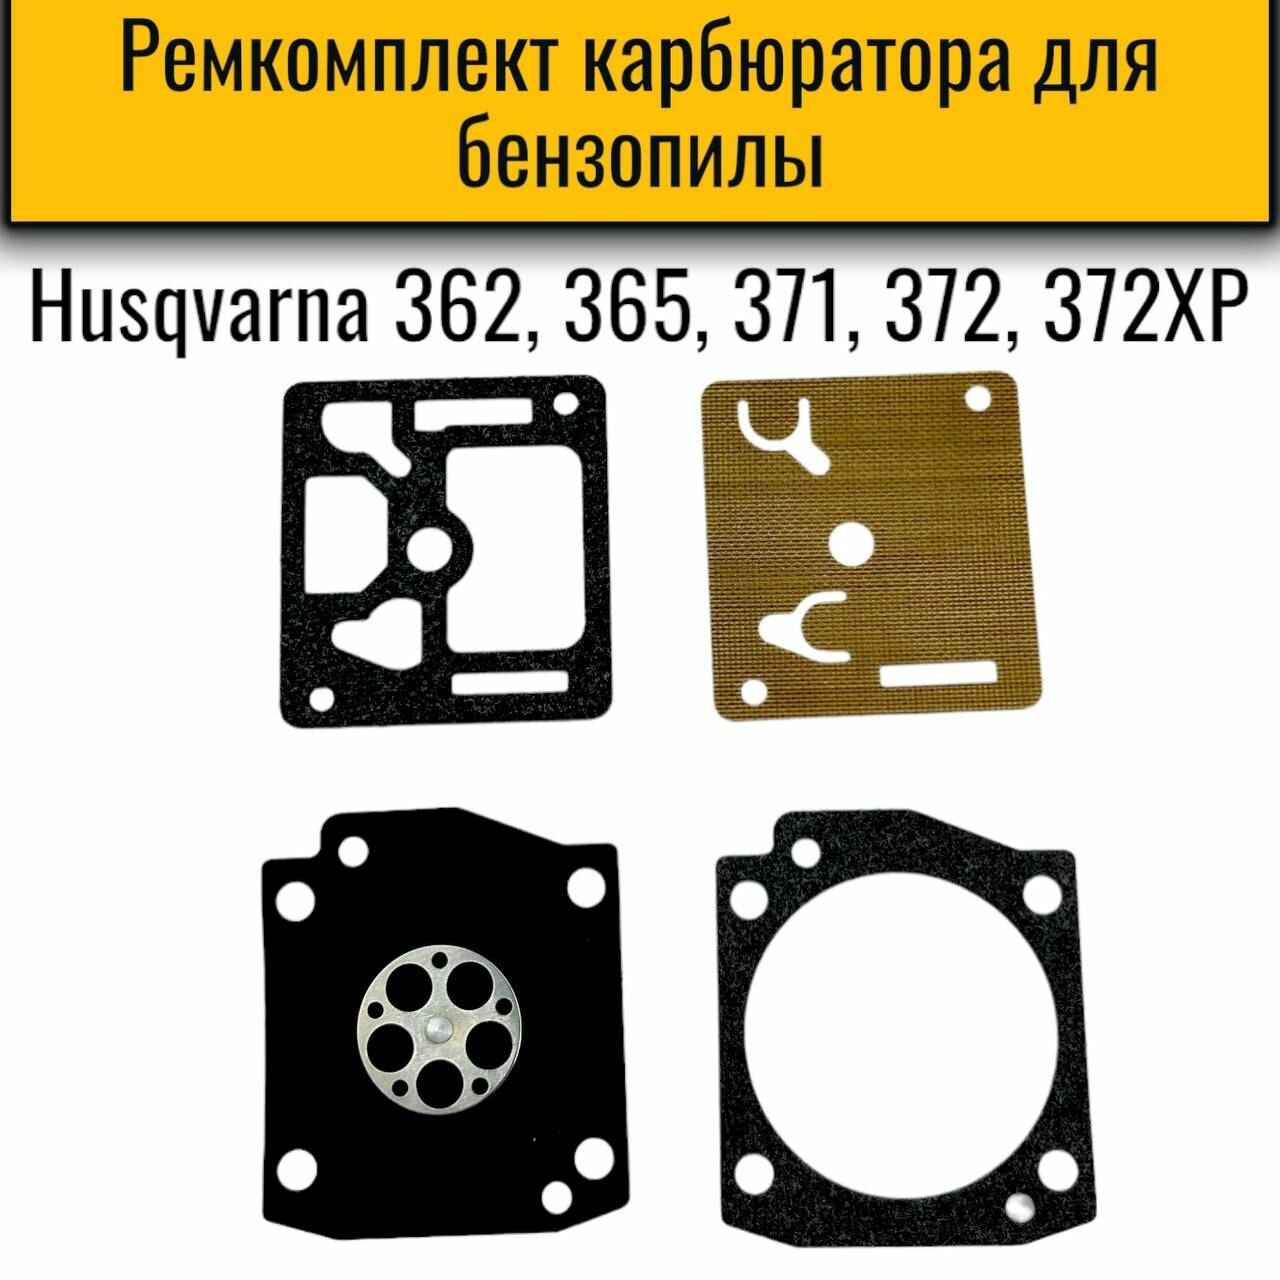 Ремкомплект карбюратора для бензопил Husqvarna 362, 365, 371, 372, 372XP мембраны